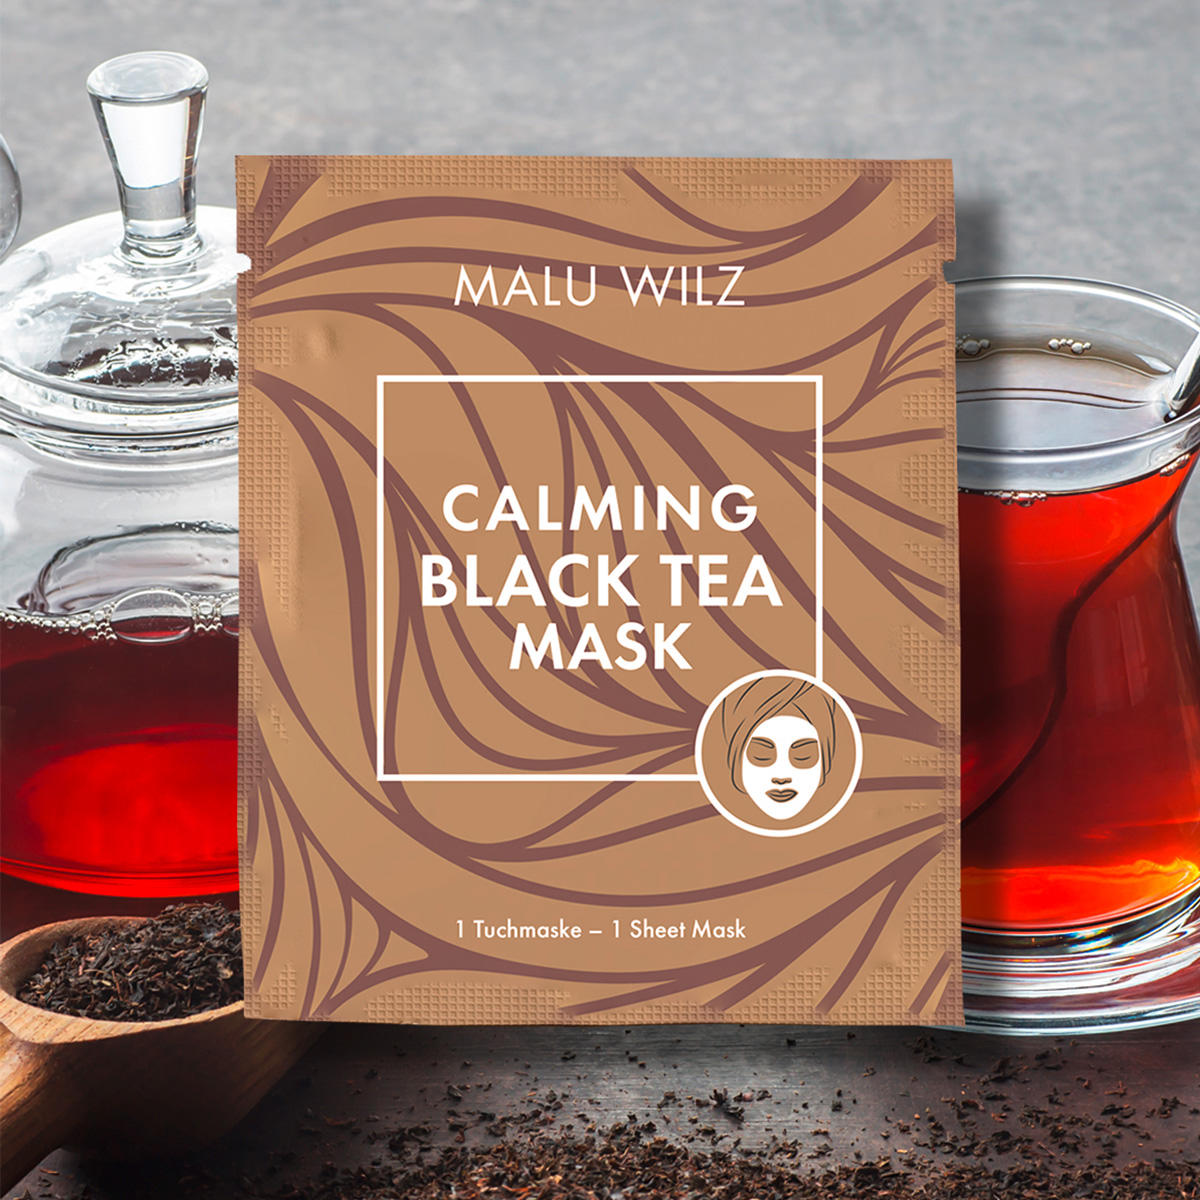 Malu Wilz Mascarilla calmante de té negro 1 Stück - 2